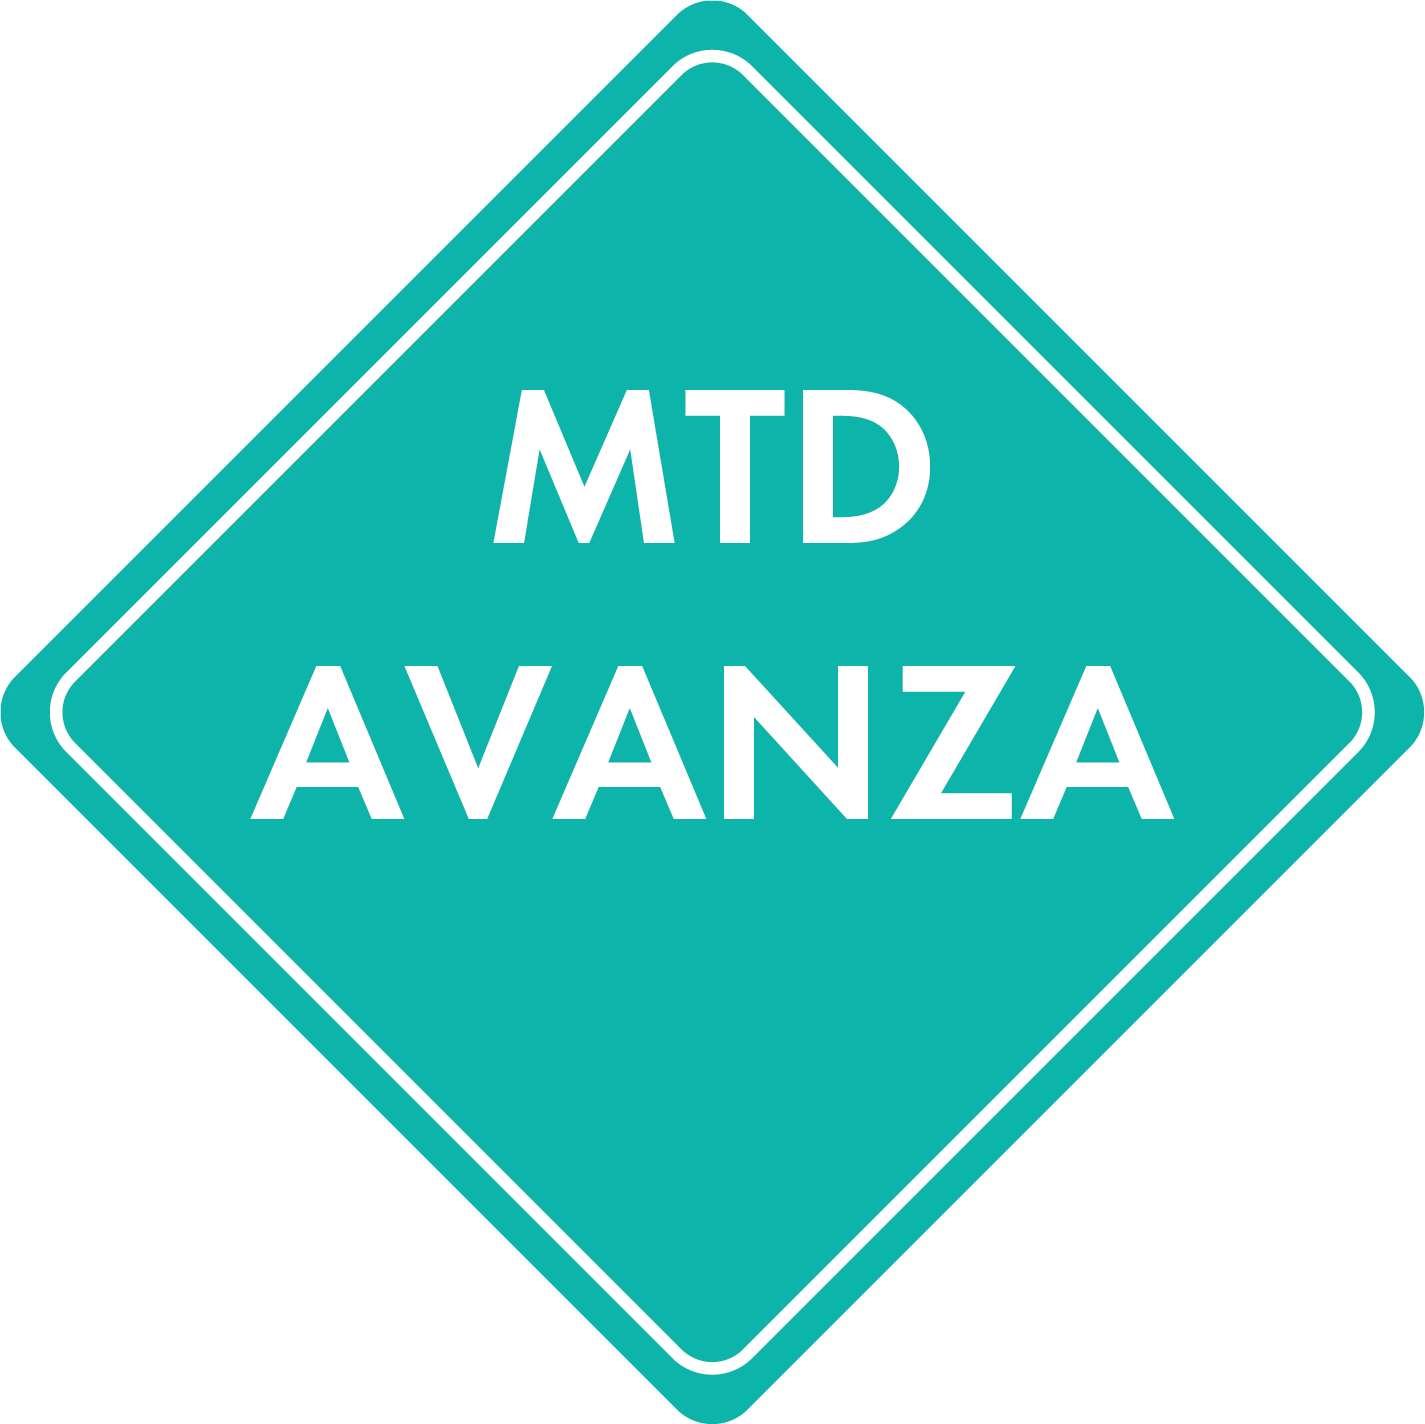 Logotipo de MTD avanza (un diamante turquesa en forma de un letrero de obras viales con las palabras "MTD avanza")